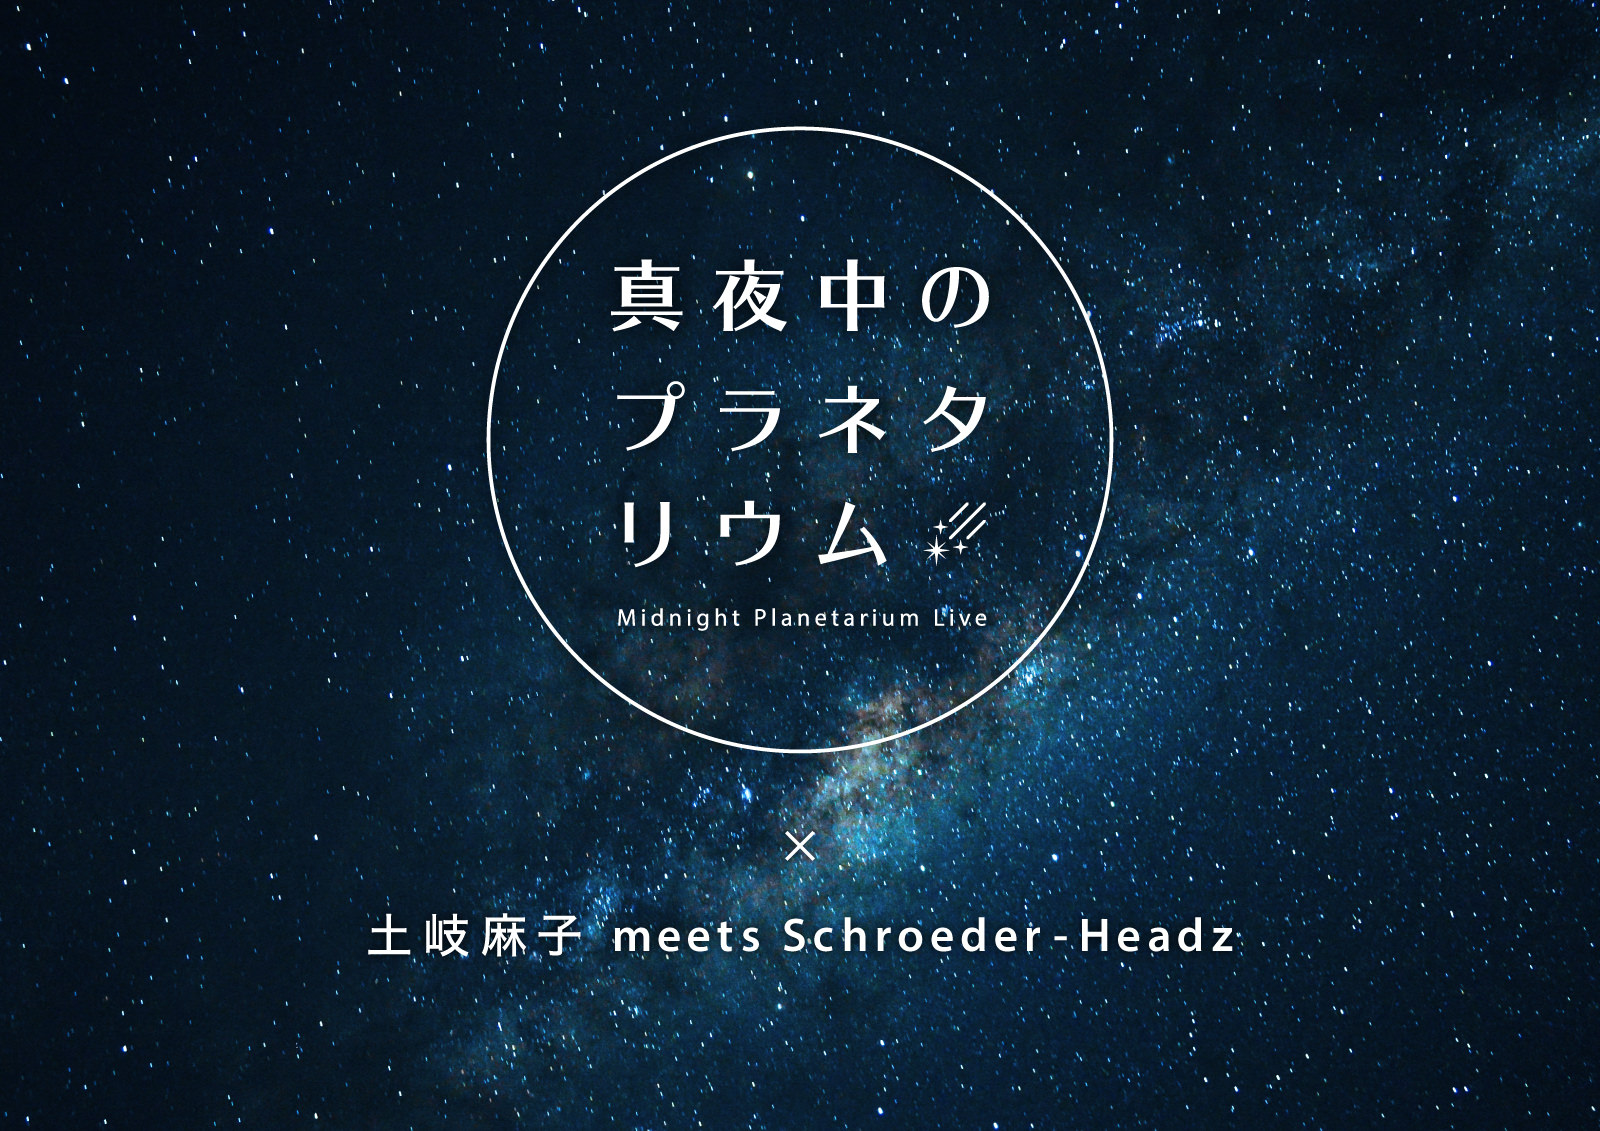 『土岐麻子 meets Schroeder-Headz』が出演
クリスマスにプラネタリウムからの配信ライブを開催！！